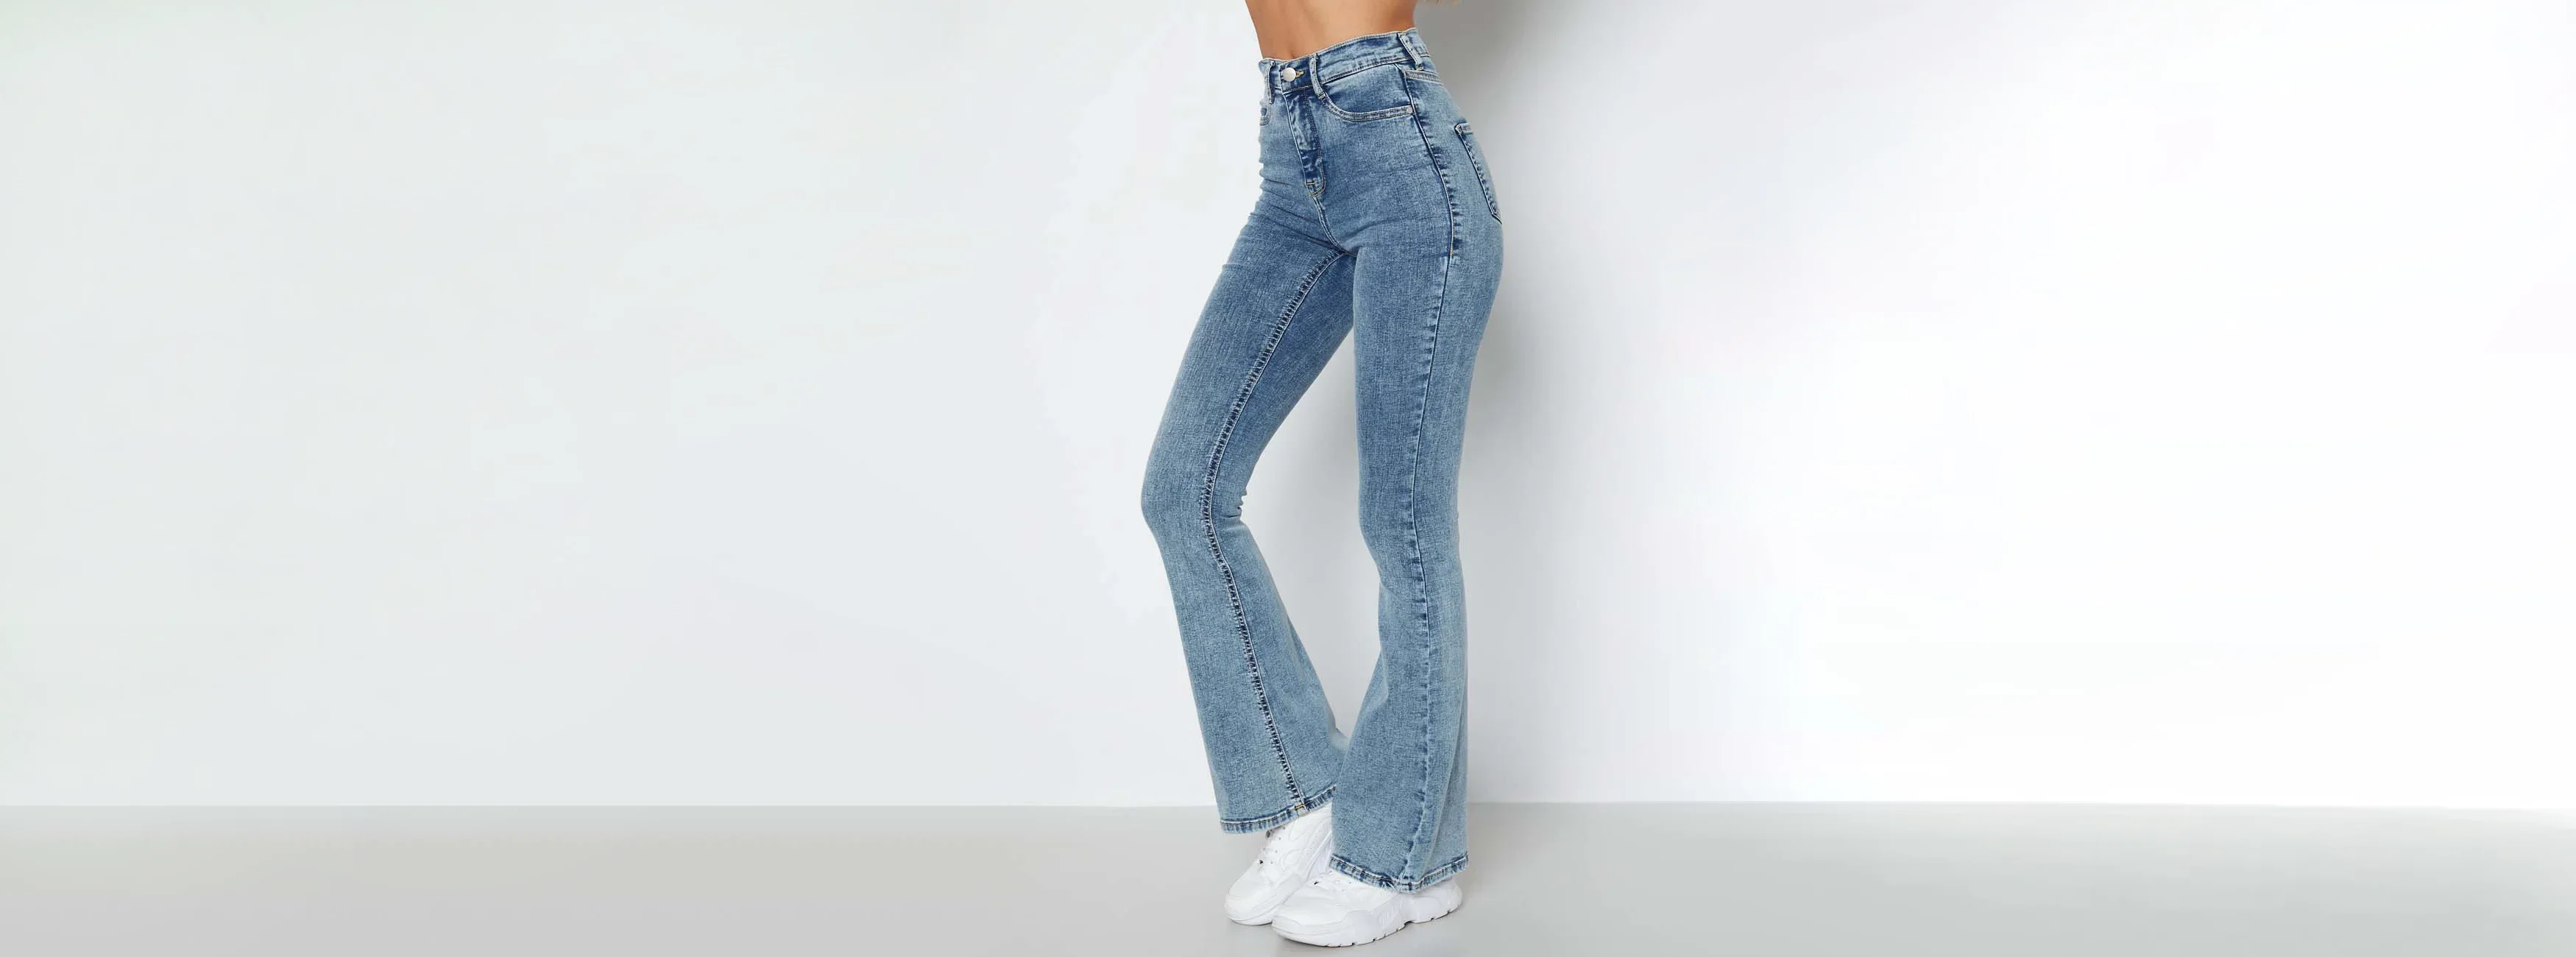 High waist jeans dam